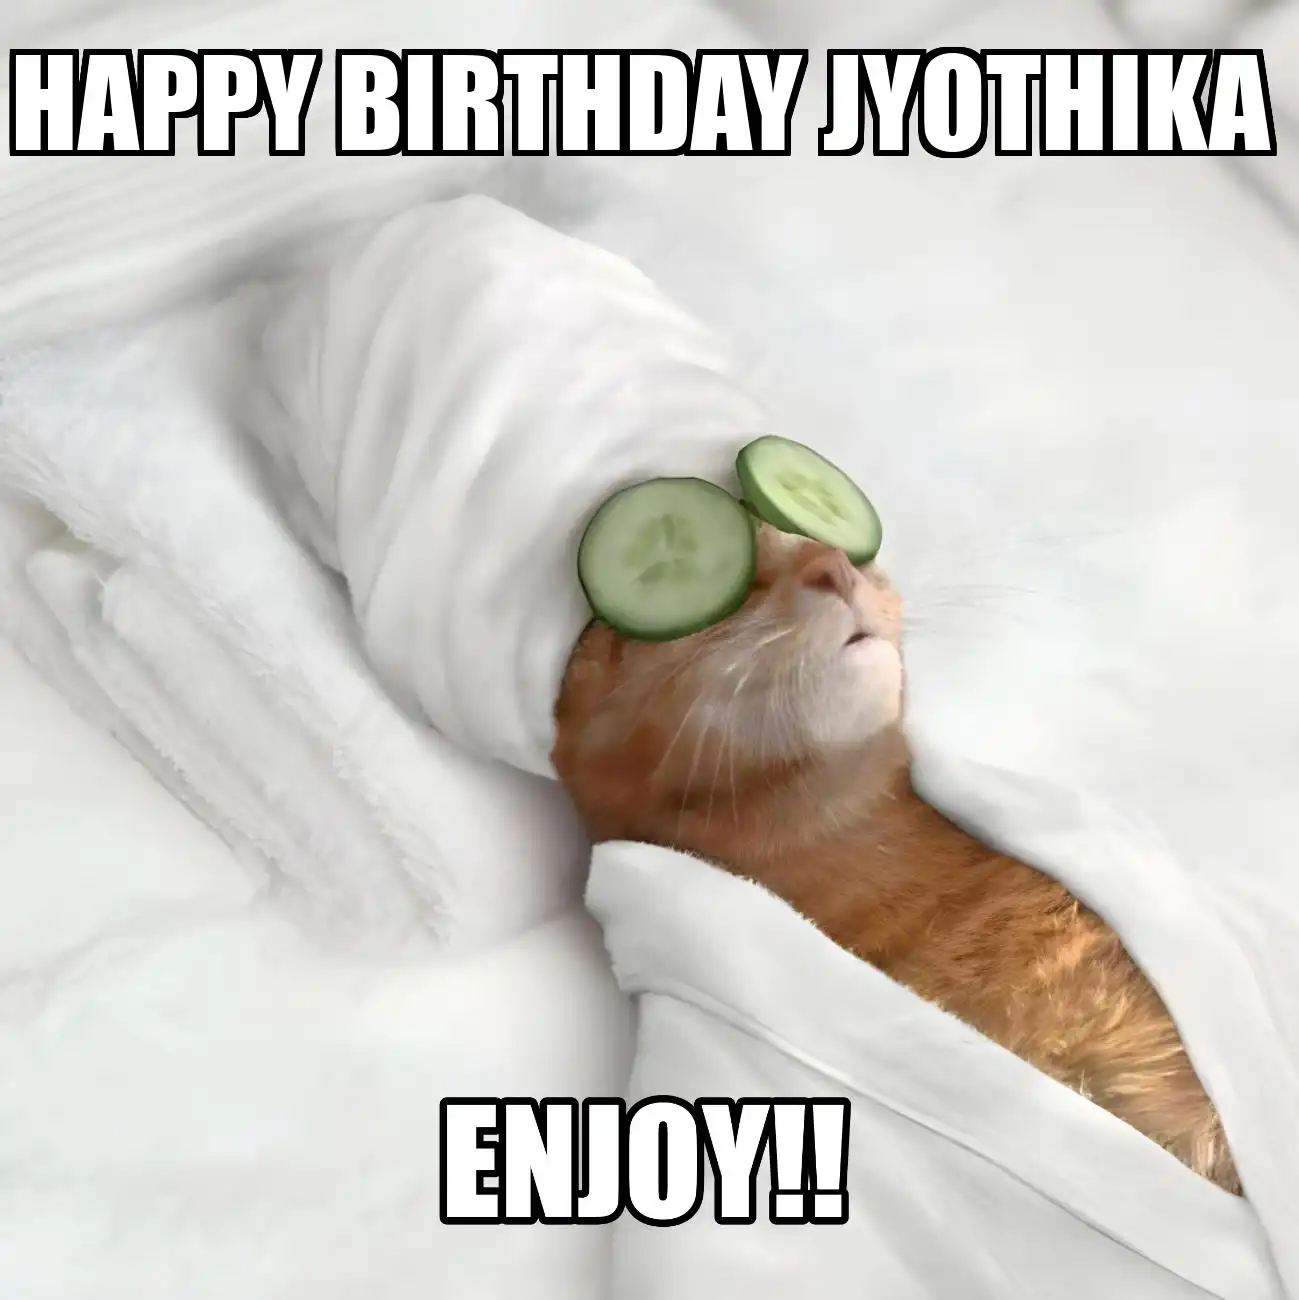 Happy Birthday Jyothika Enjoy Cat Meme